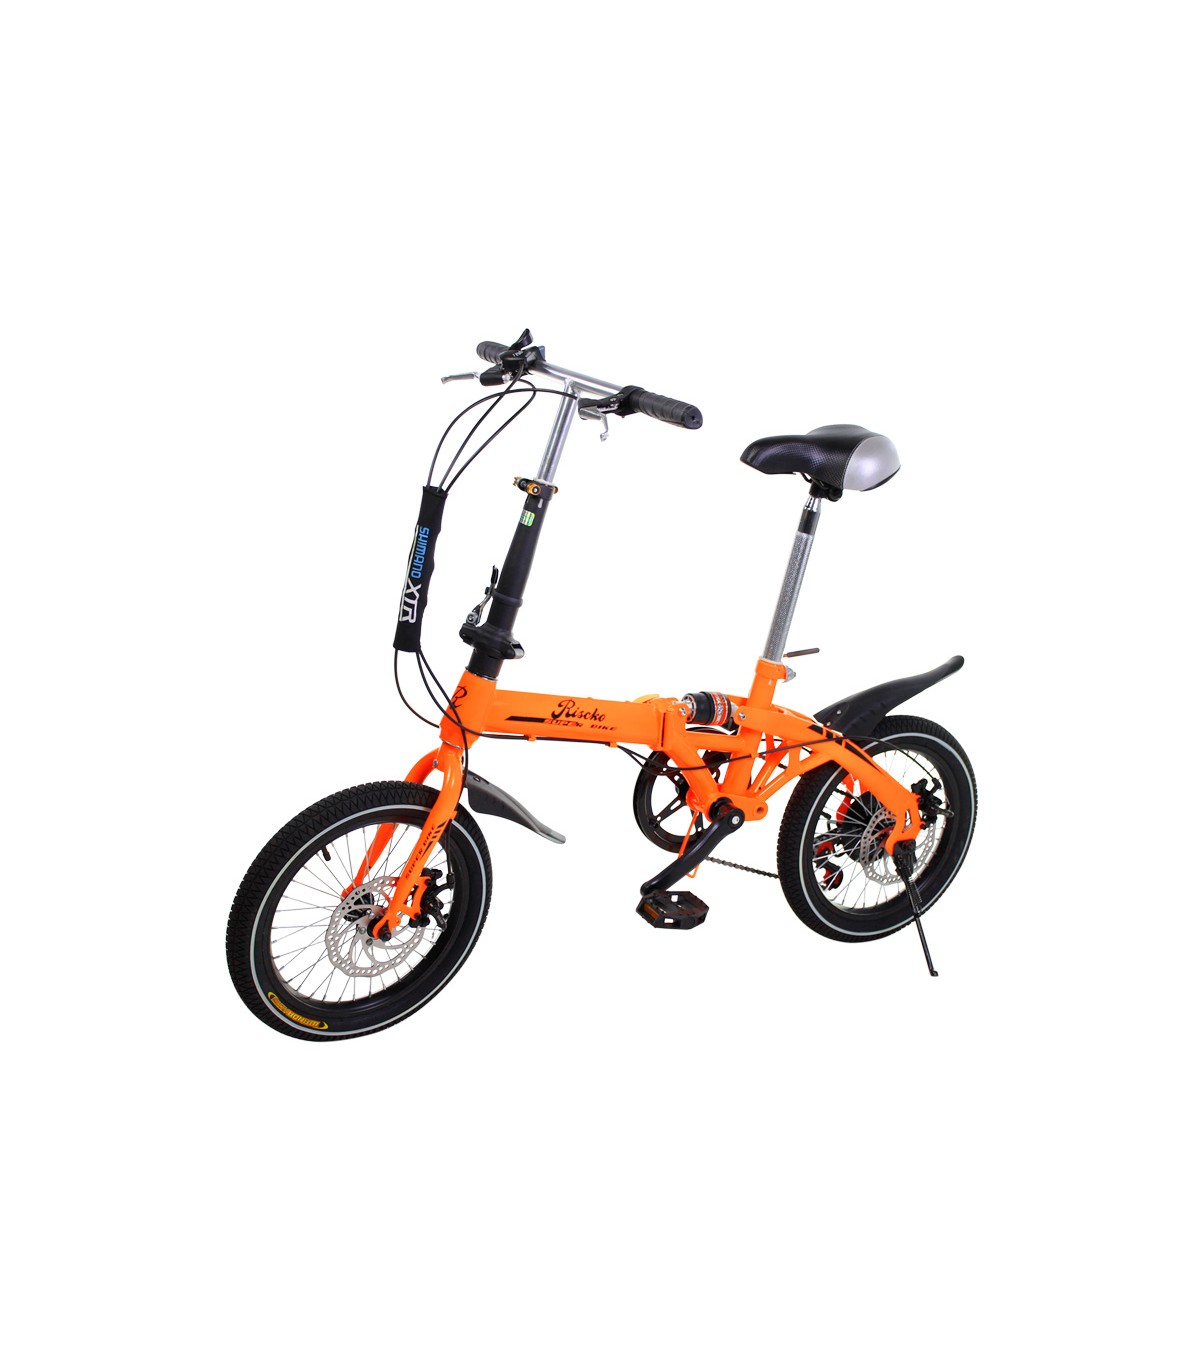 Imaginativo entre Renacimiento Comprar bicicleta plegable BEP-32 online - Venta de bicicletas baratas